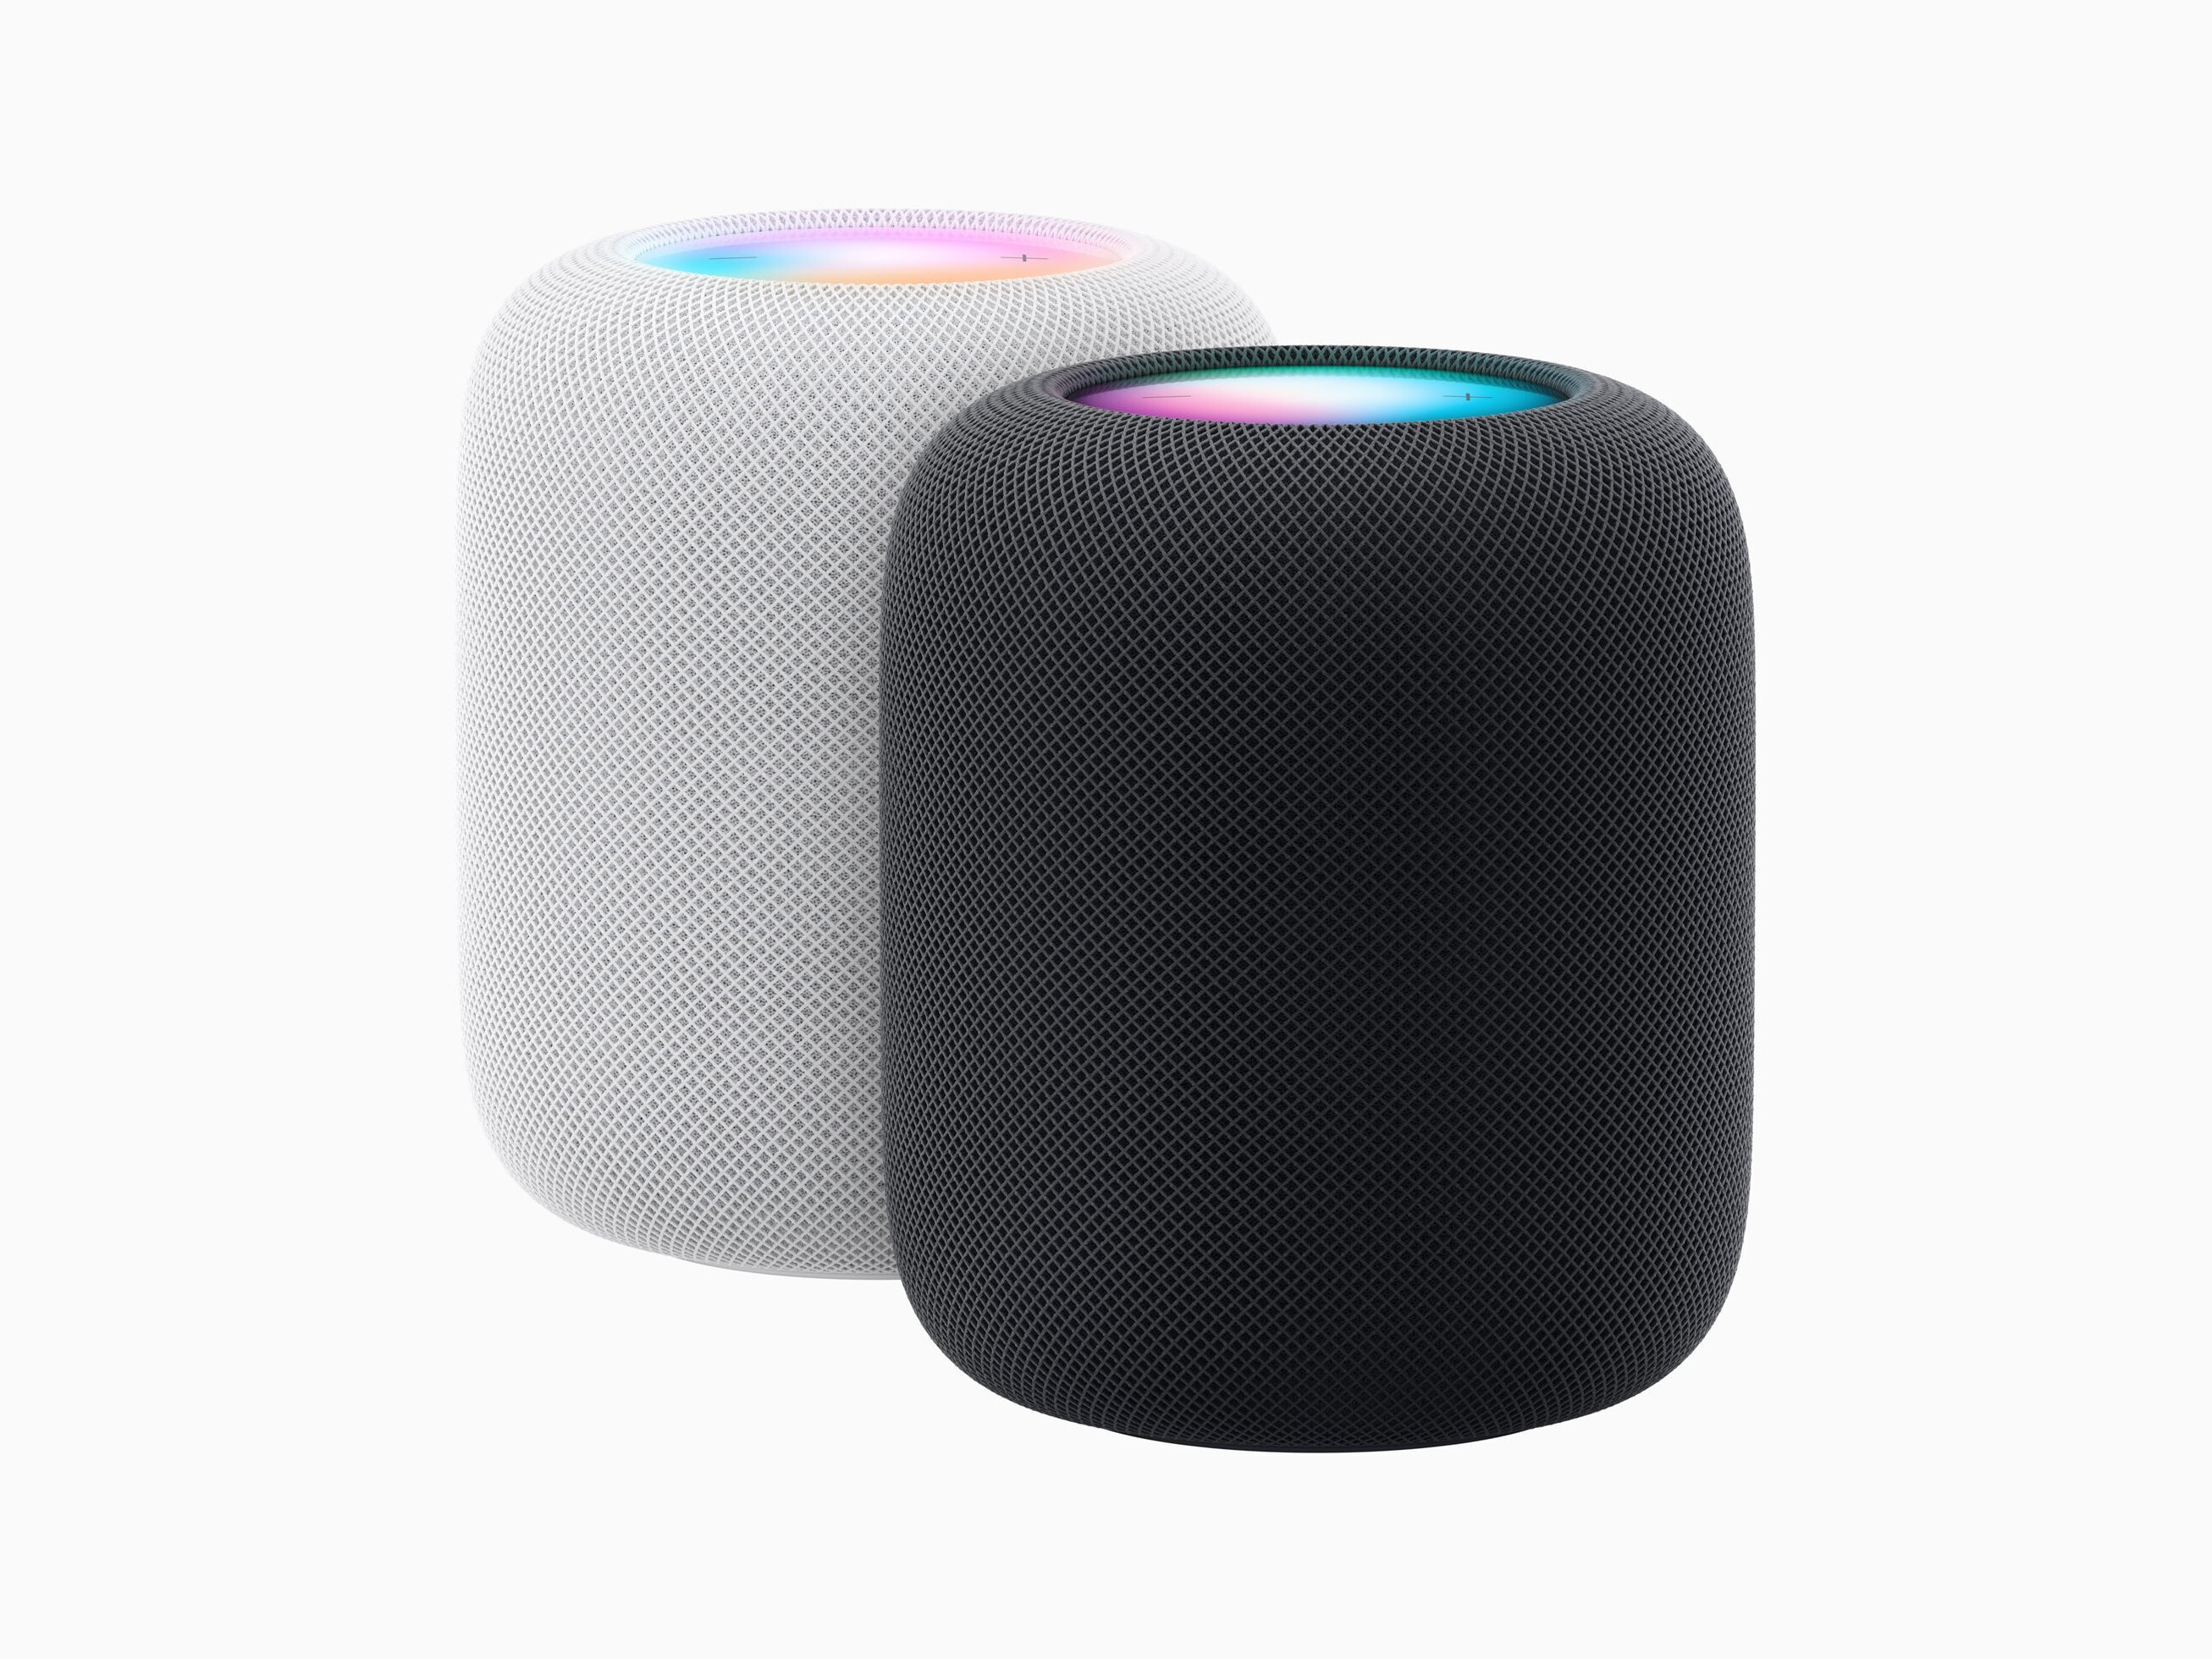 Der HomePod wird entweder in White oder Midnight zum Verkauf angeboten.  - Apples neuester HomePod ist intelligenter, lauter und klingt besser als je zuvor